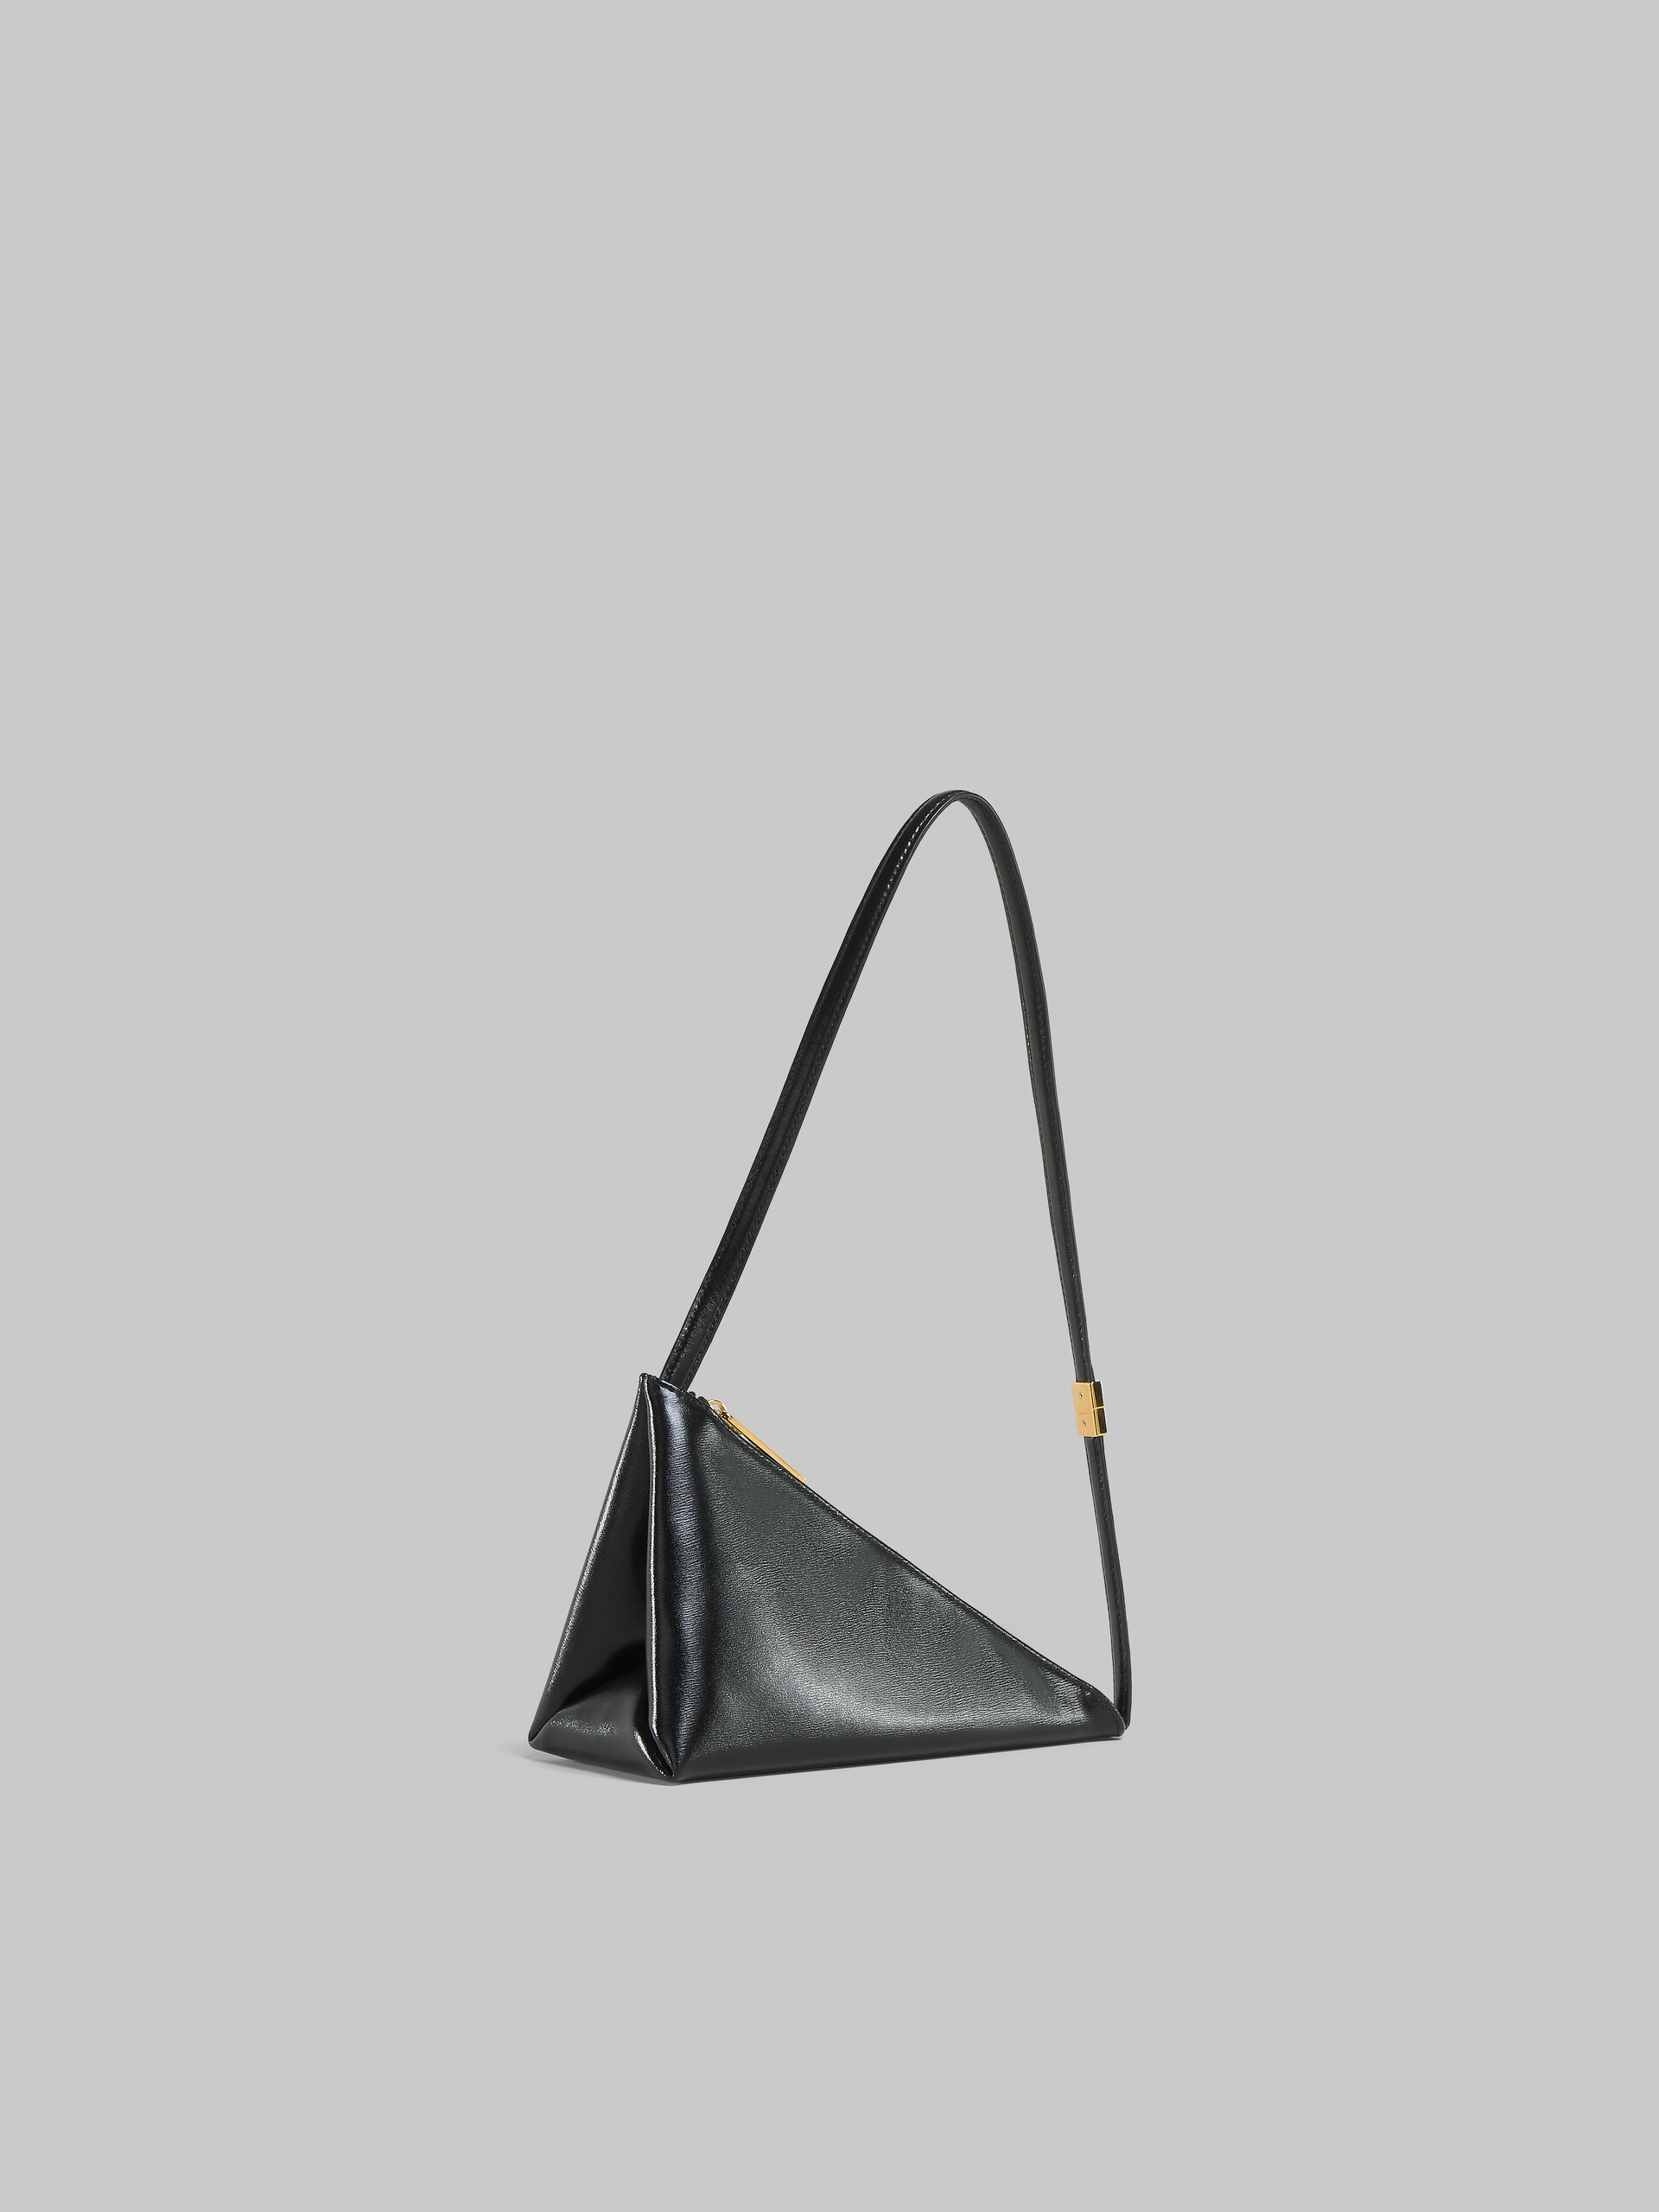 Black leather Prisma triangle crossbody bag - Shoulder Bag - Image 5